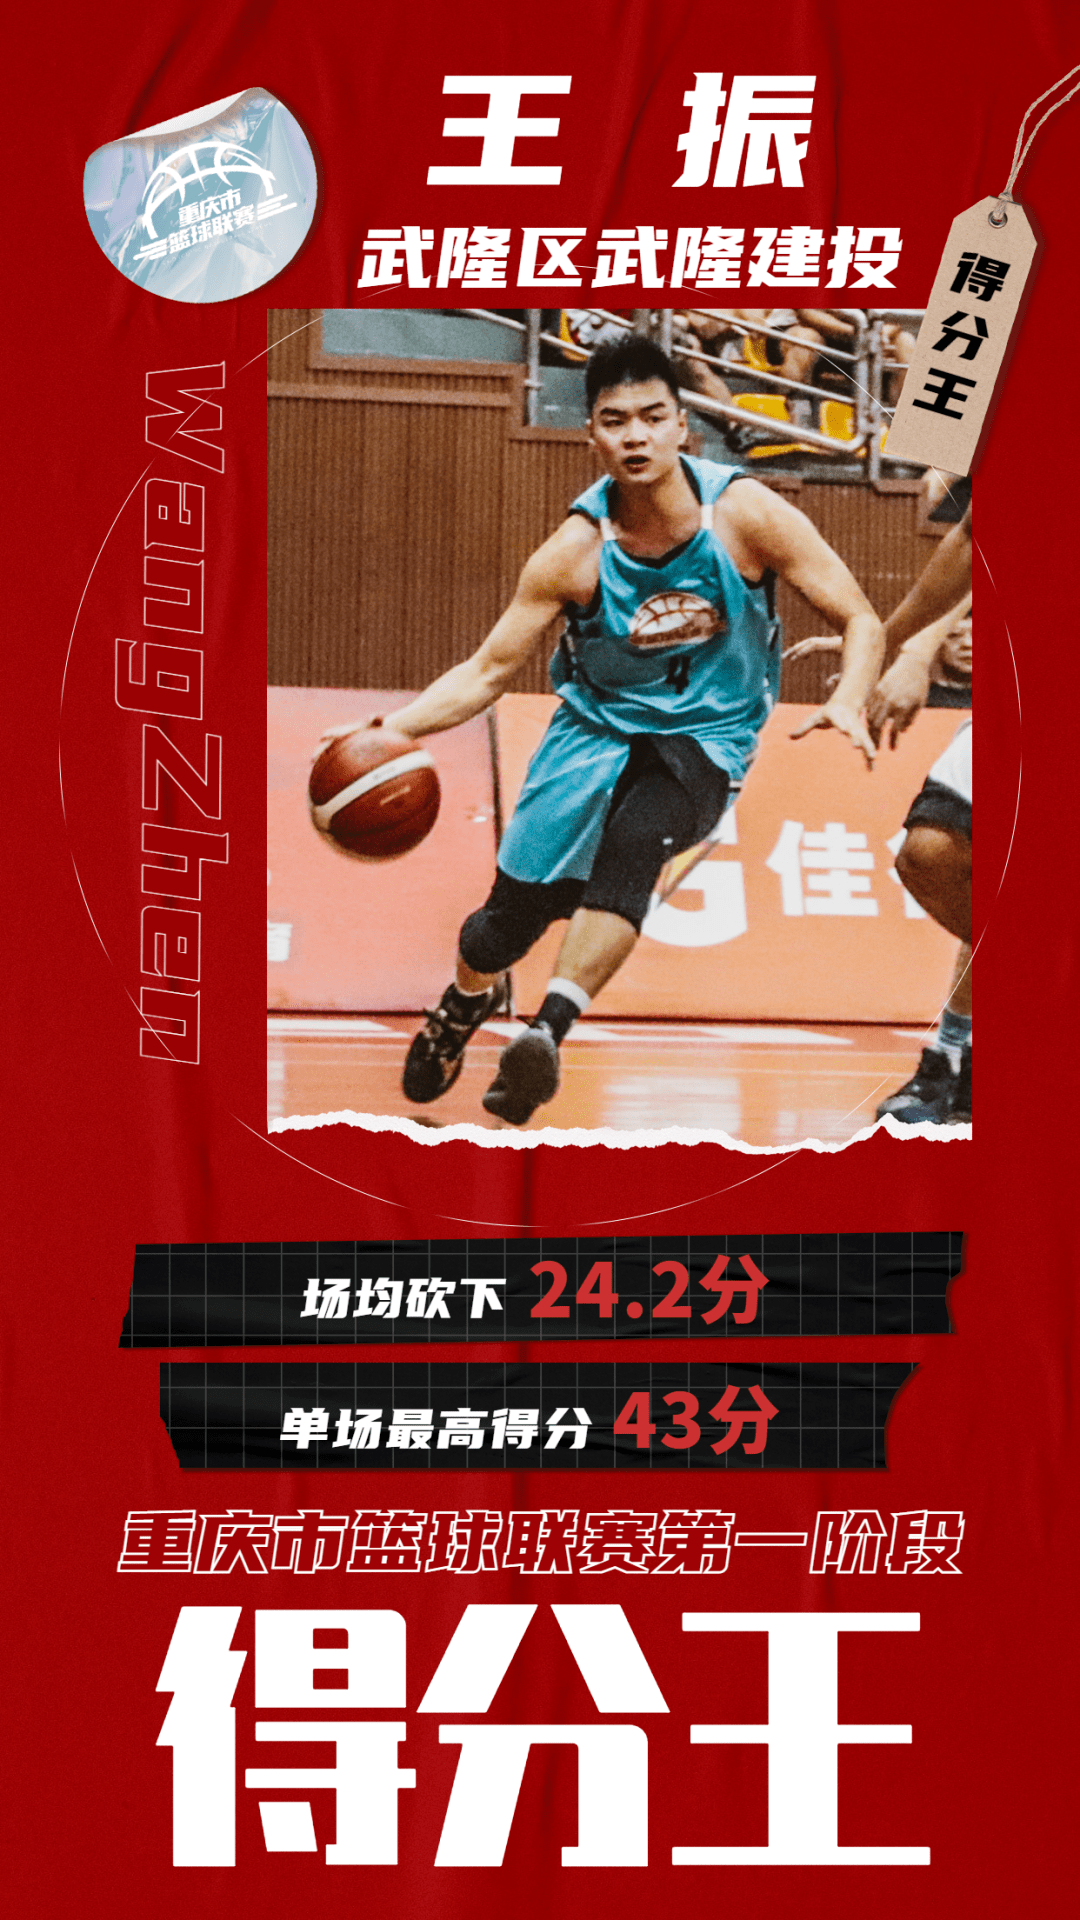 王振,2021重庆市篮球联赛(第一阶段)得分王!